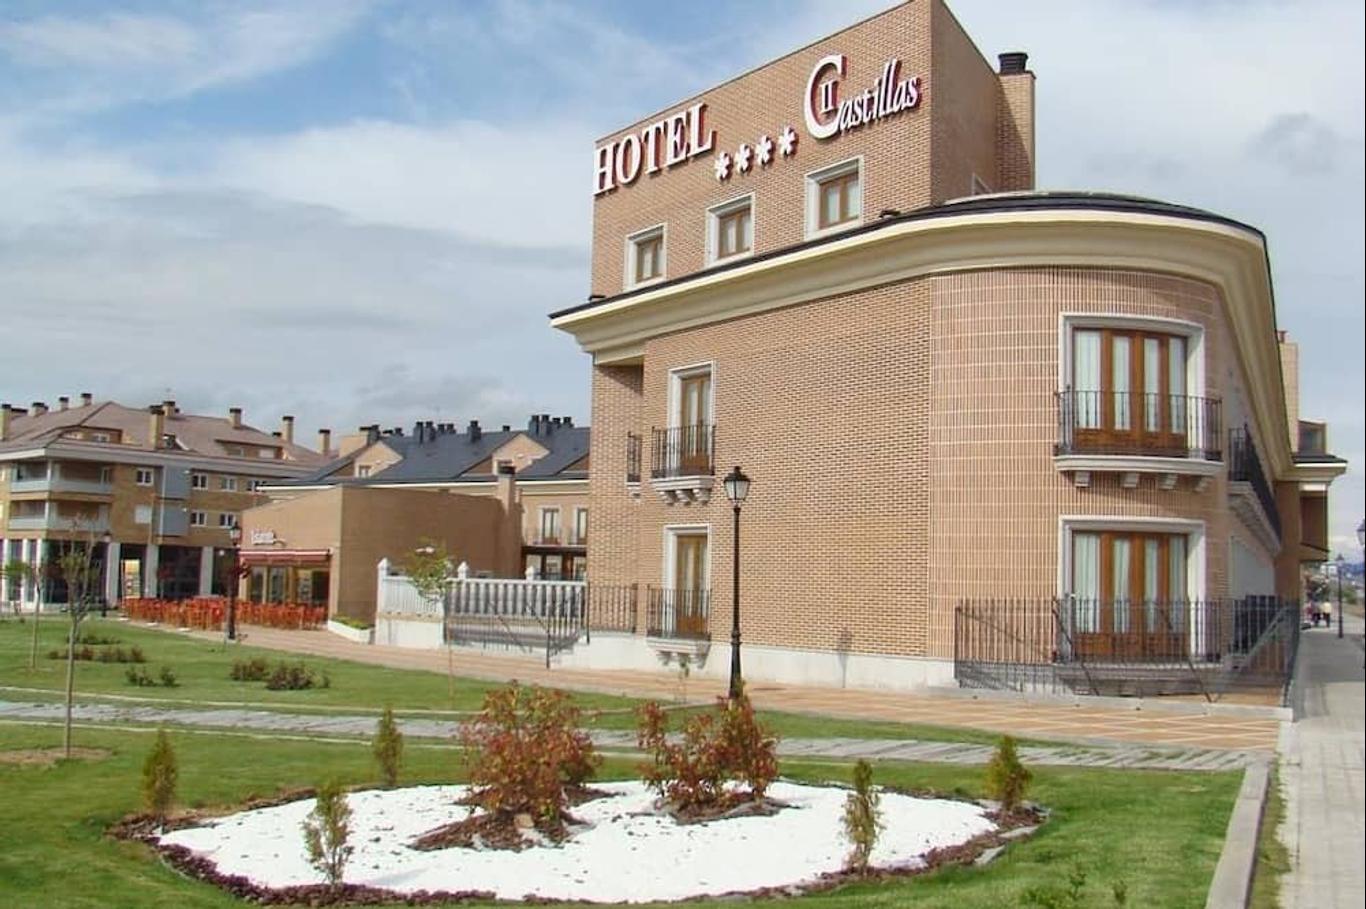 Hotel II Castillas Ávila en $47 ($̶7̶6̶). Ávila de los Caballeros Hoteles - KAYAK